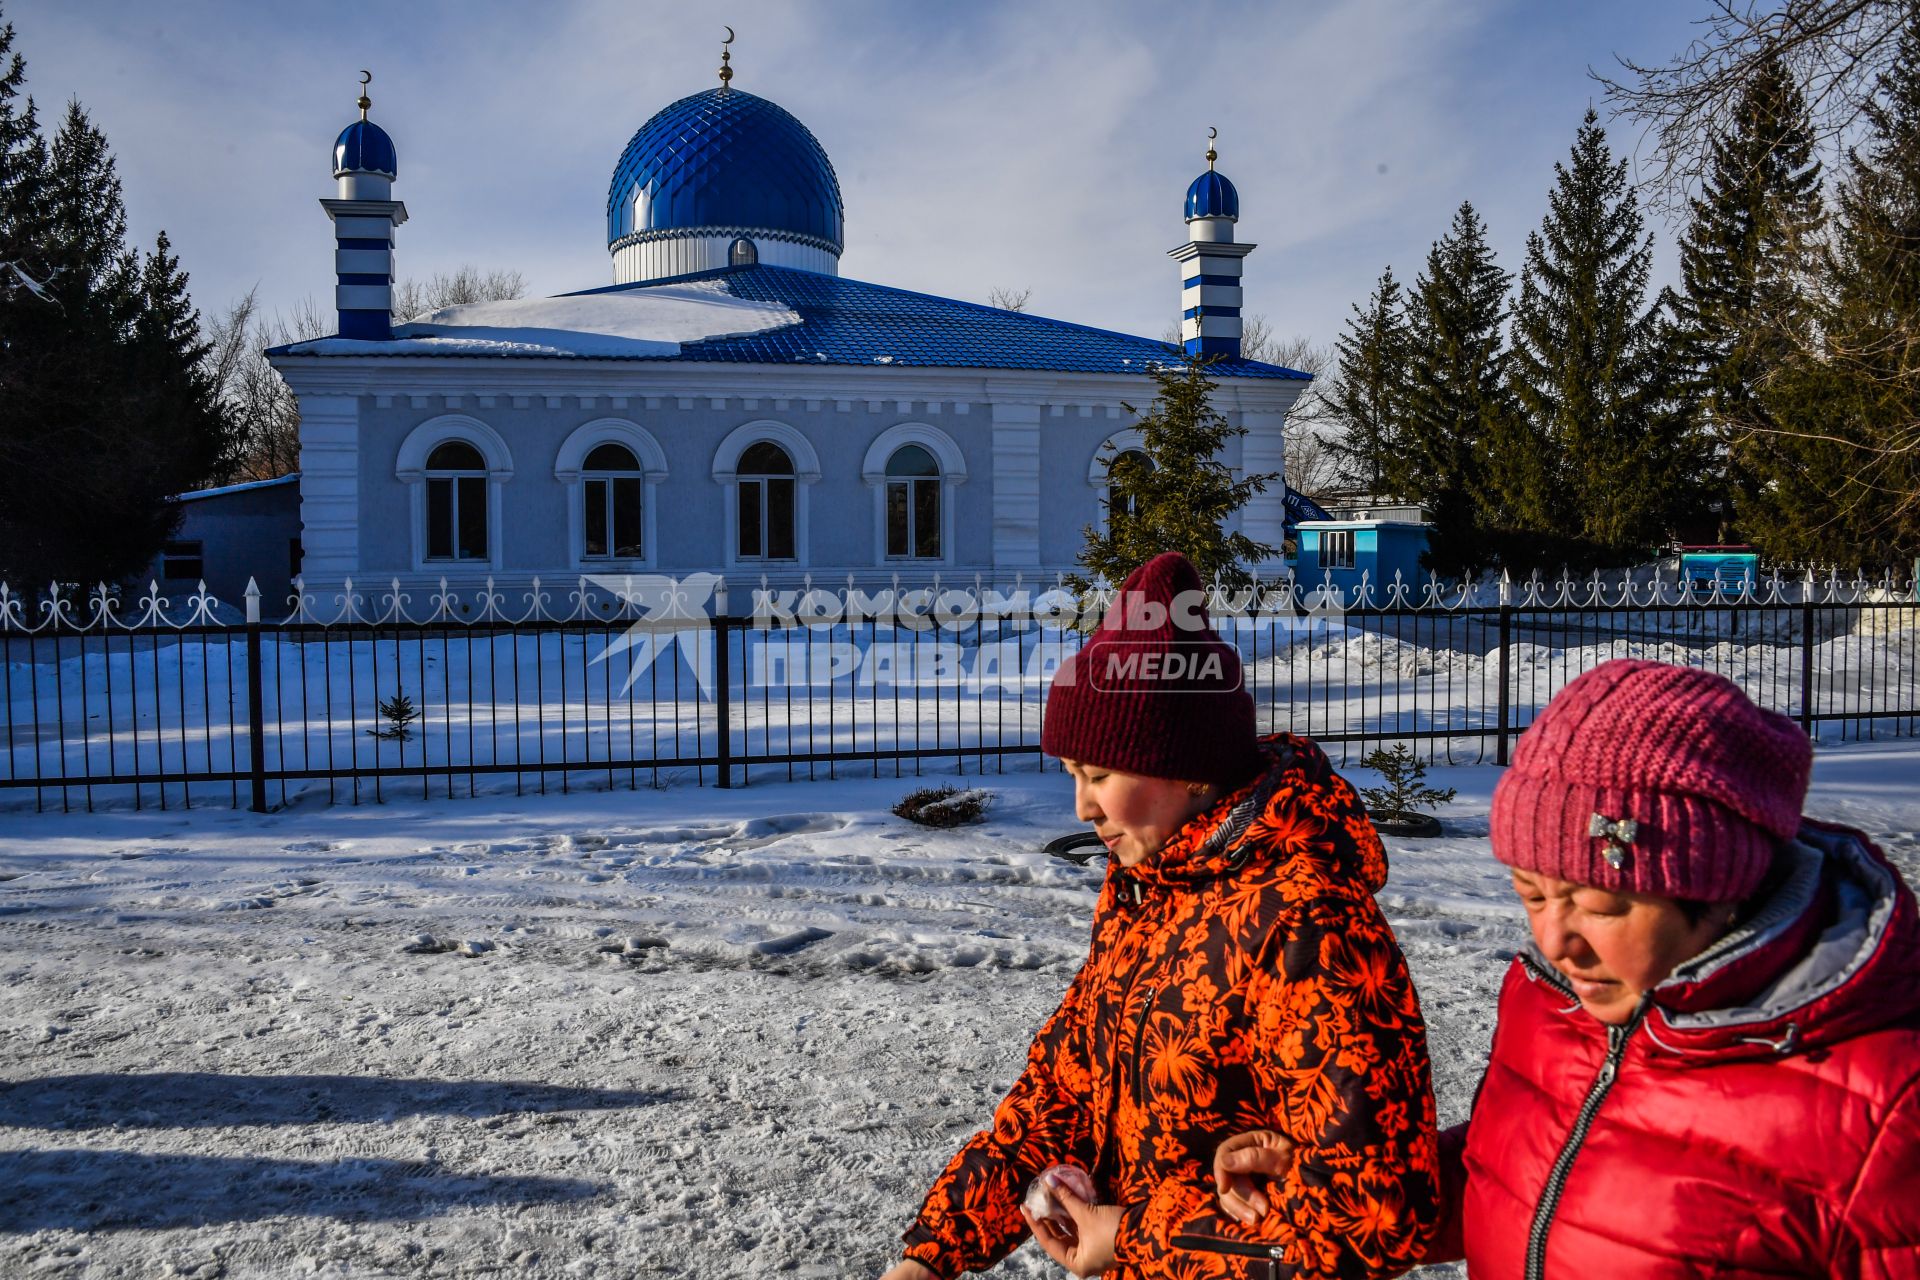 Казахстан, Усть-Каменогорск. Женщины у центральной городской мечети.